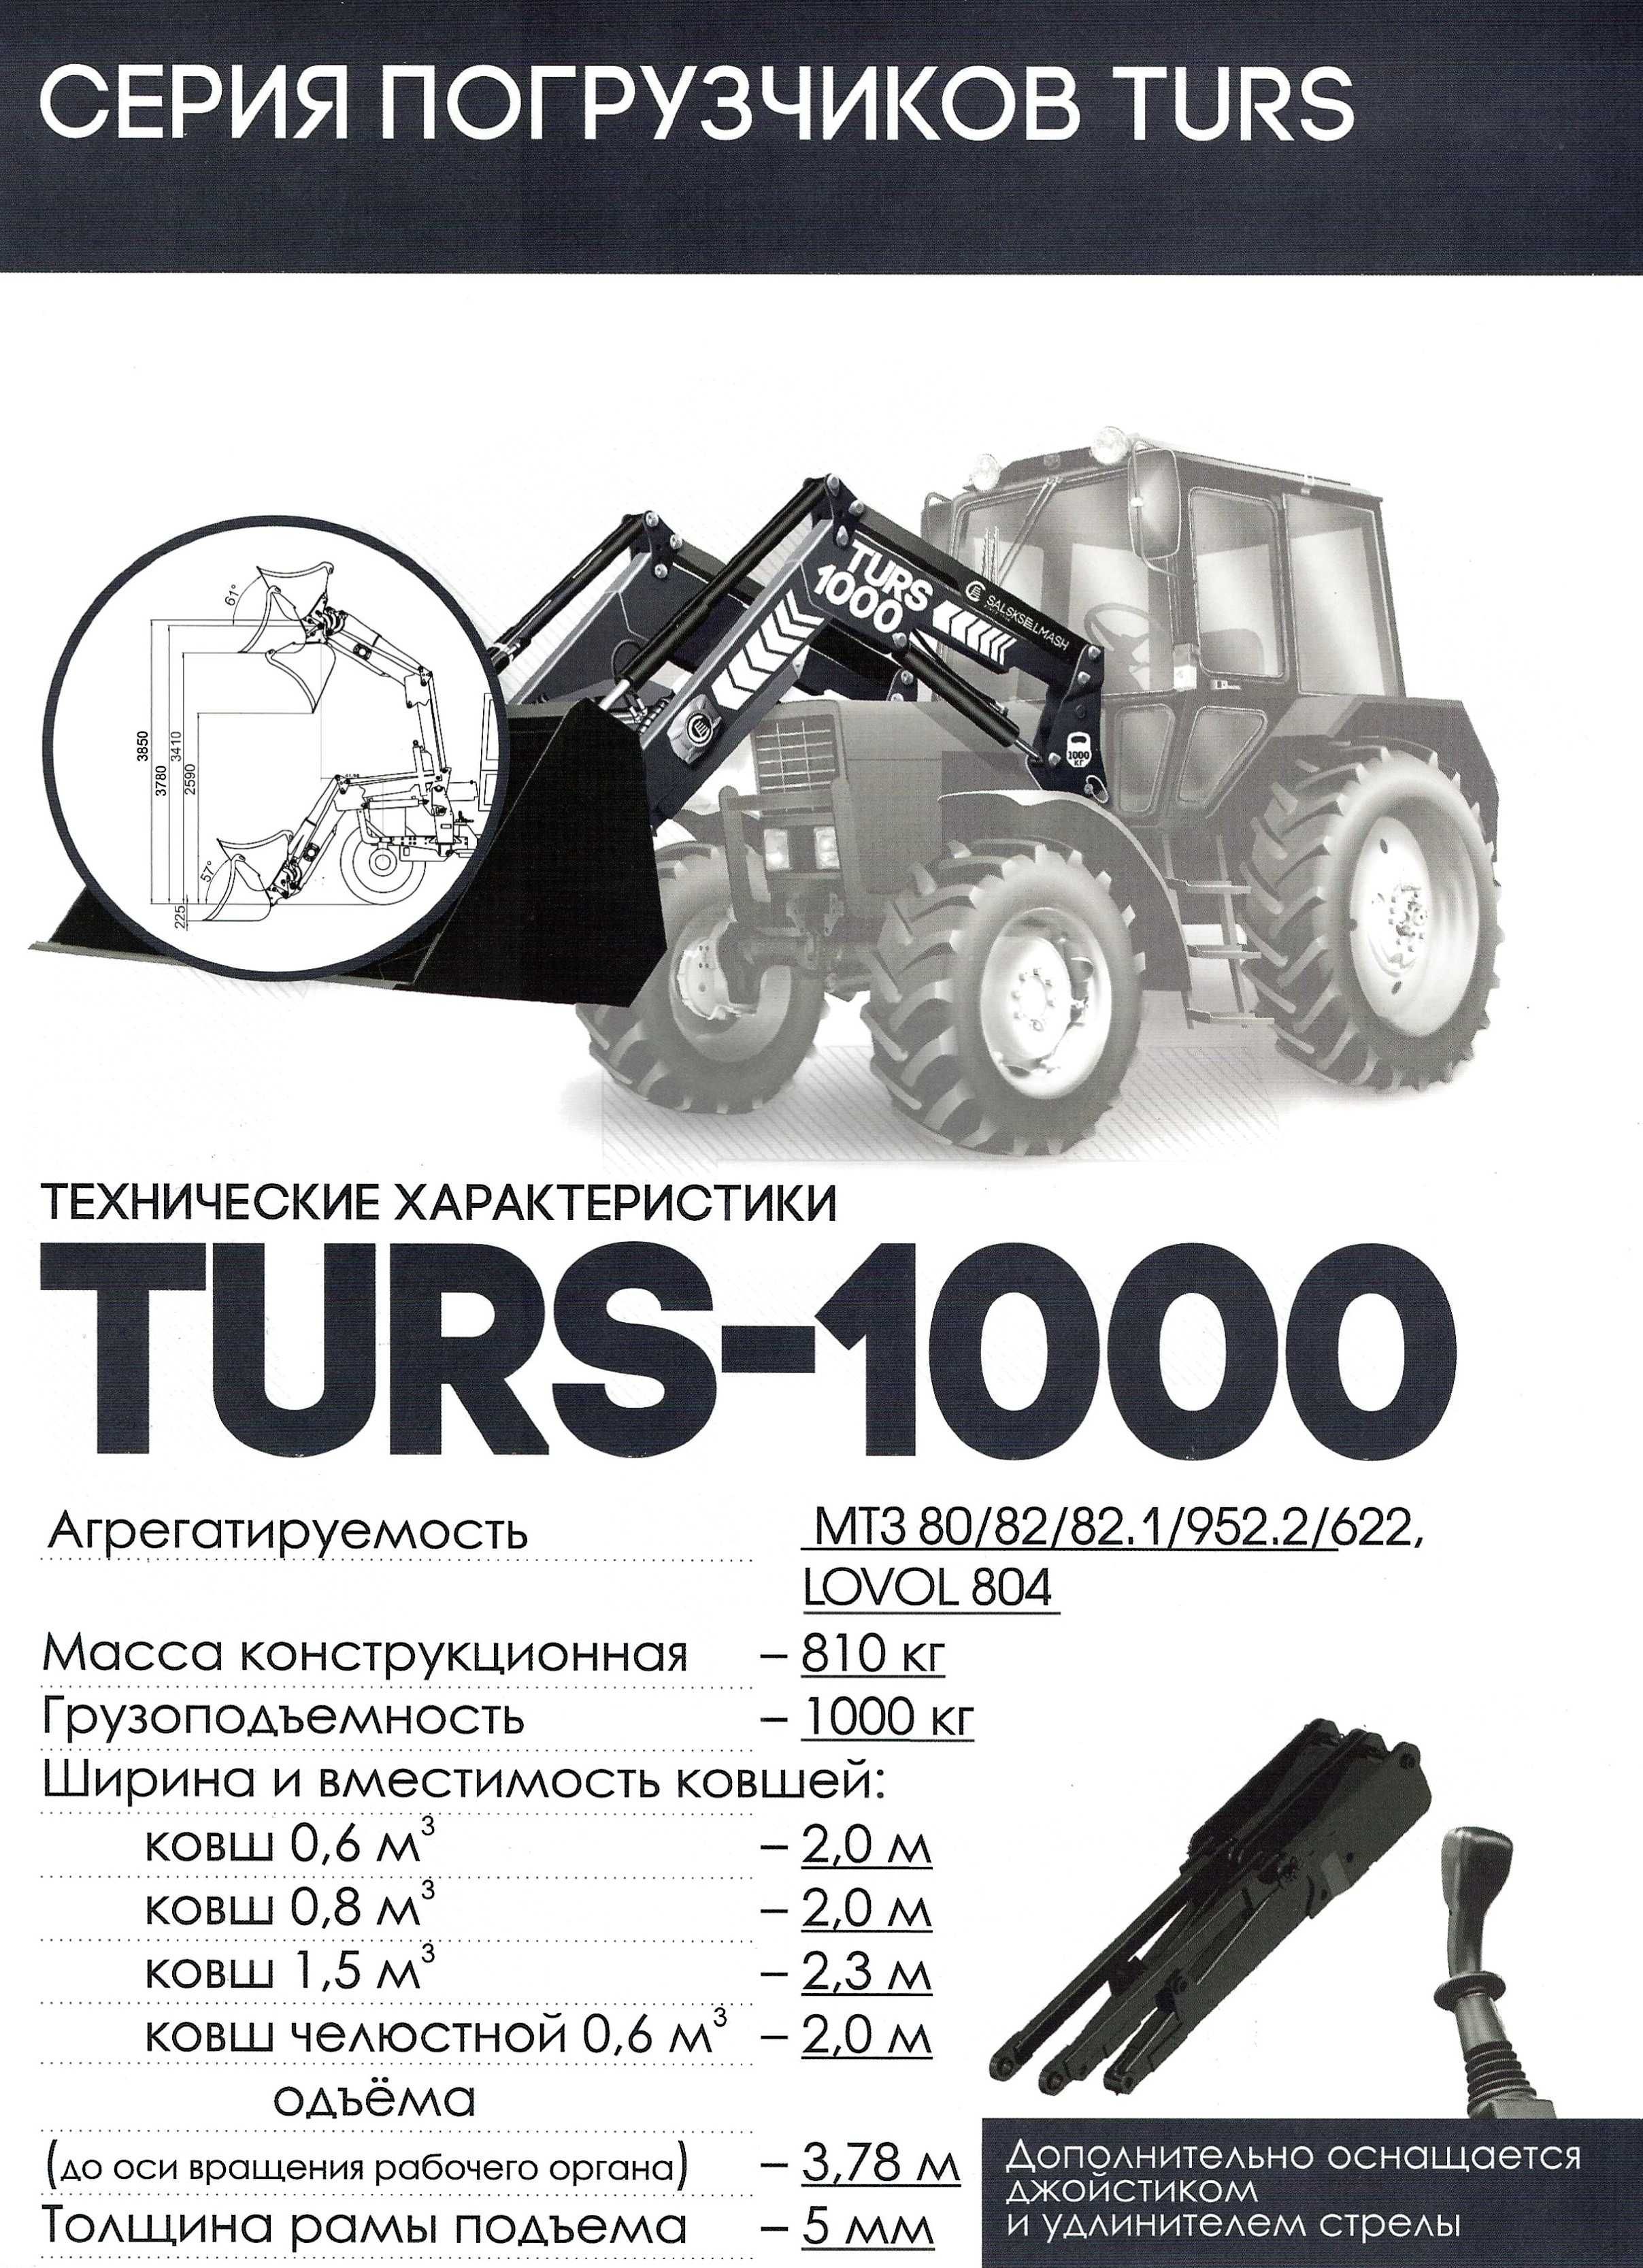 Погрузчик TURS-1000 (КУН-1000), ООО "Сальсксельмаш"